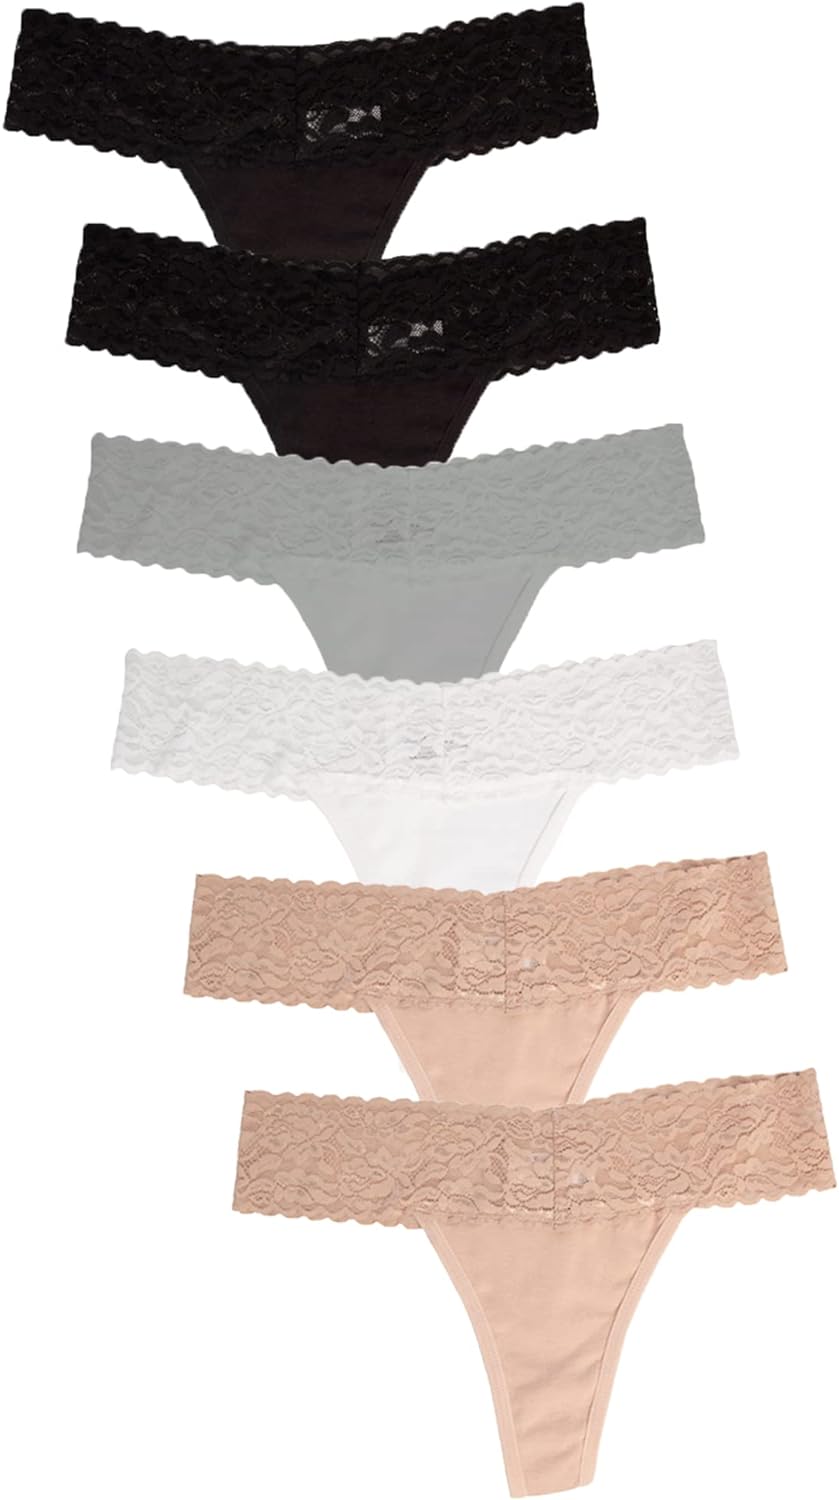 100 Cotton Underwear Women WholeSale - Price List, Bulk Buy at